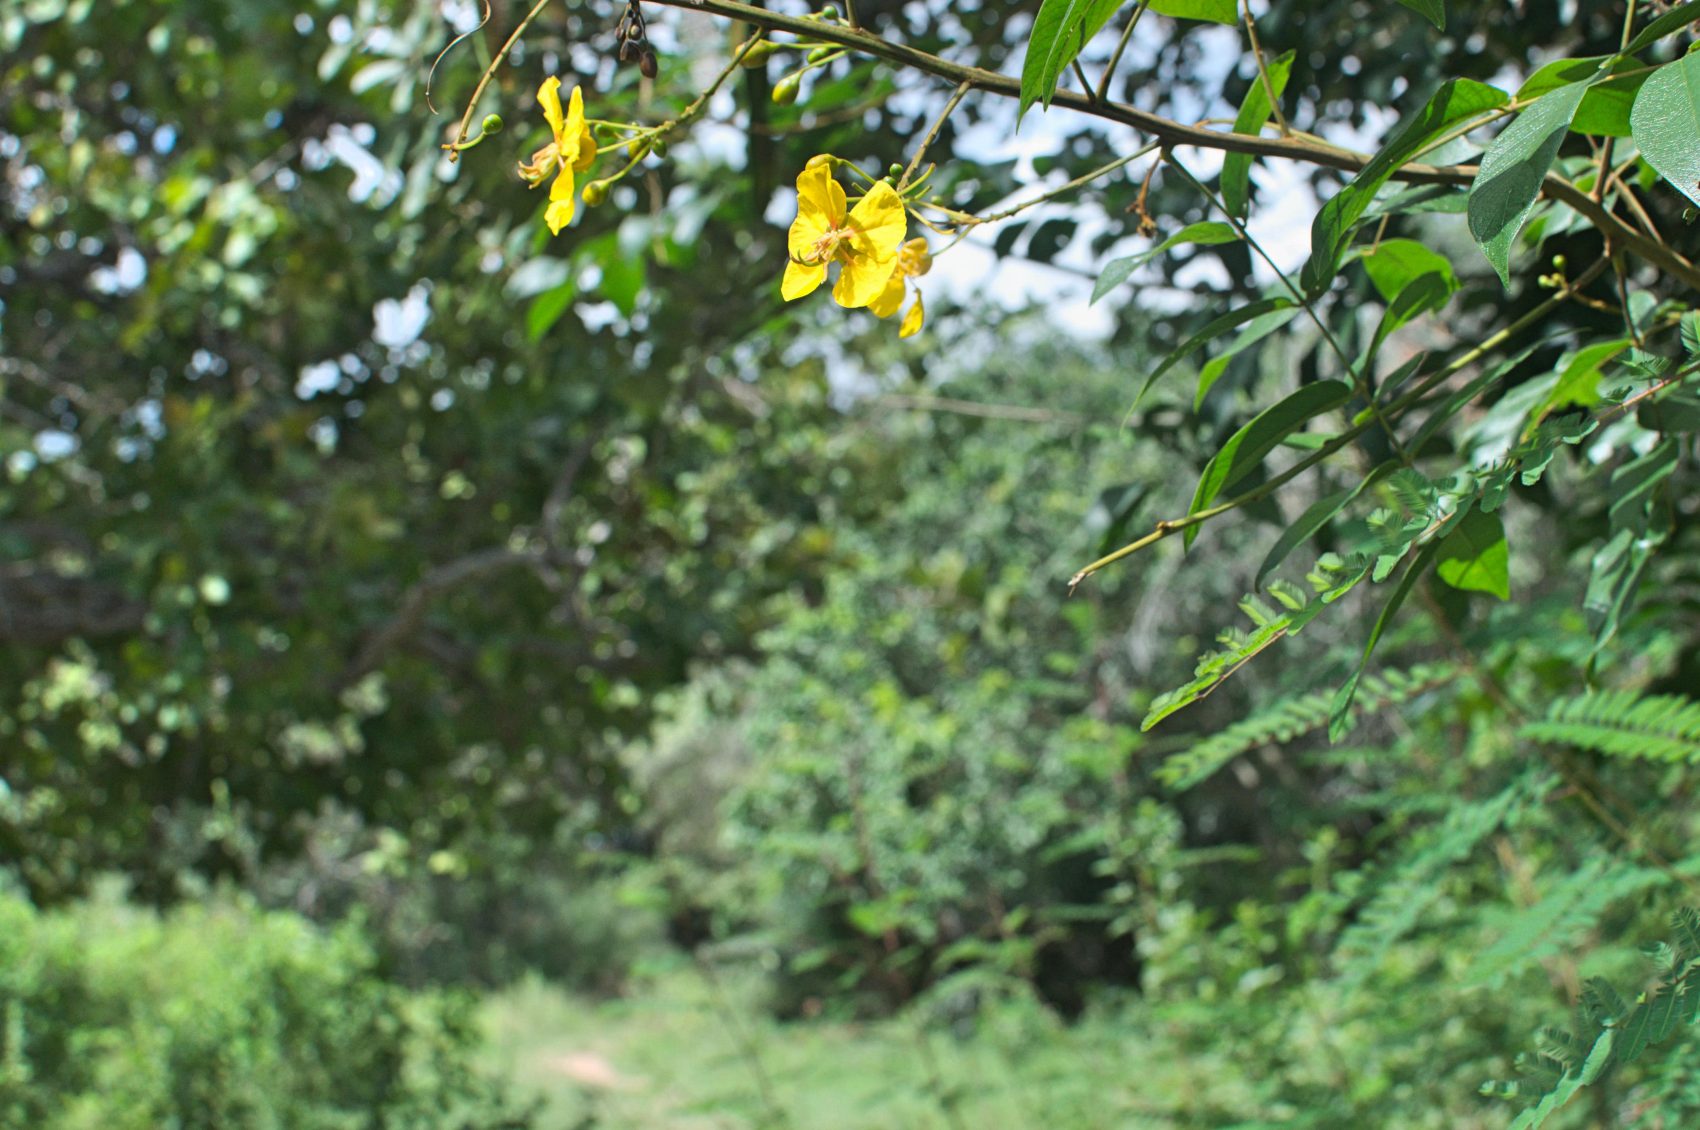 Fedegoso do Cerrado: a mata do bioma tem muito a oferecer (Foto Flavia Milhorance)